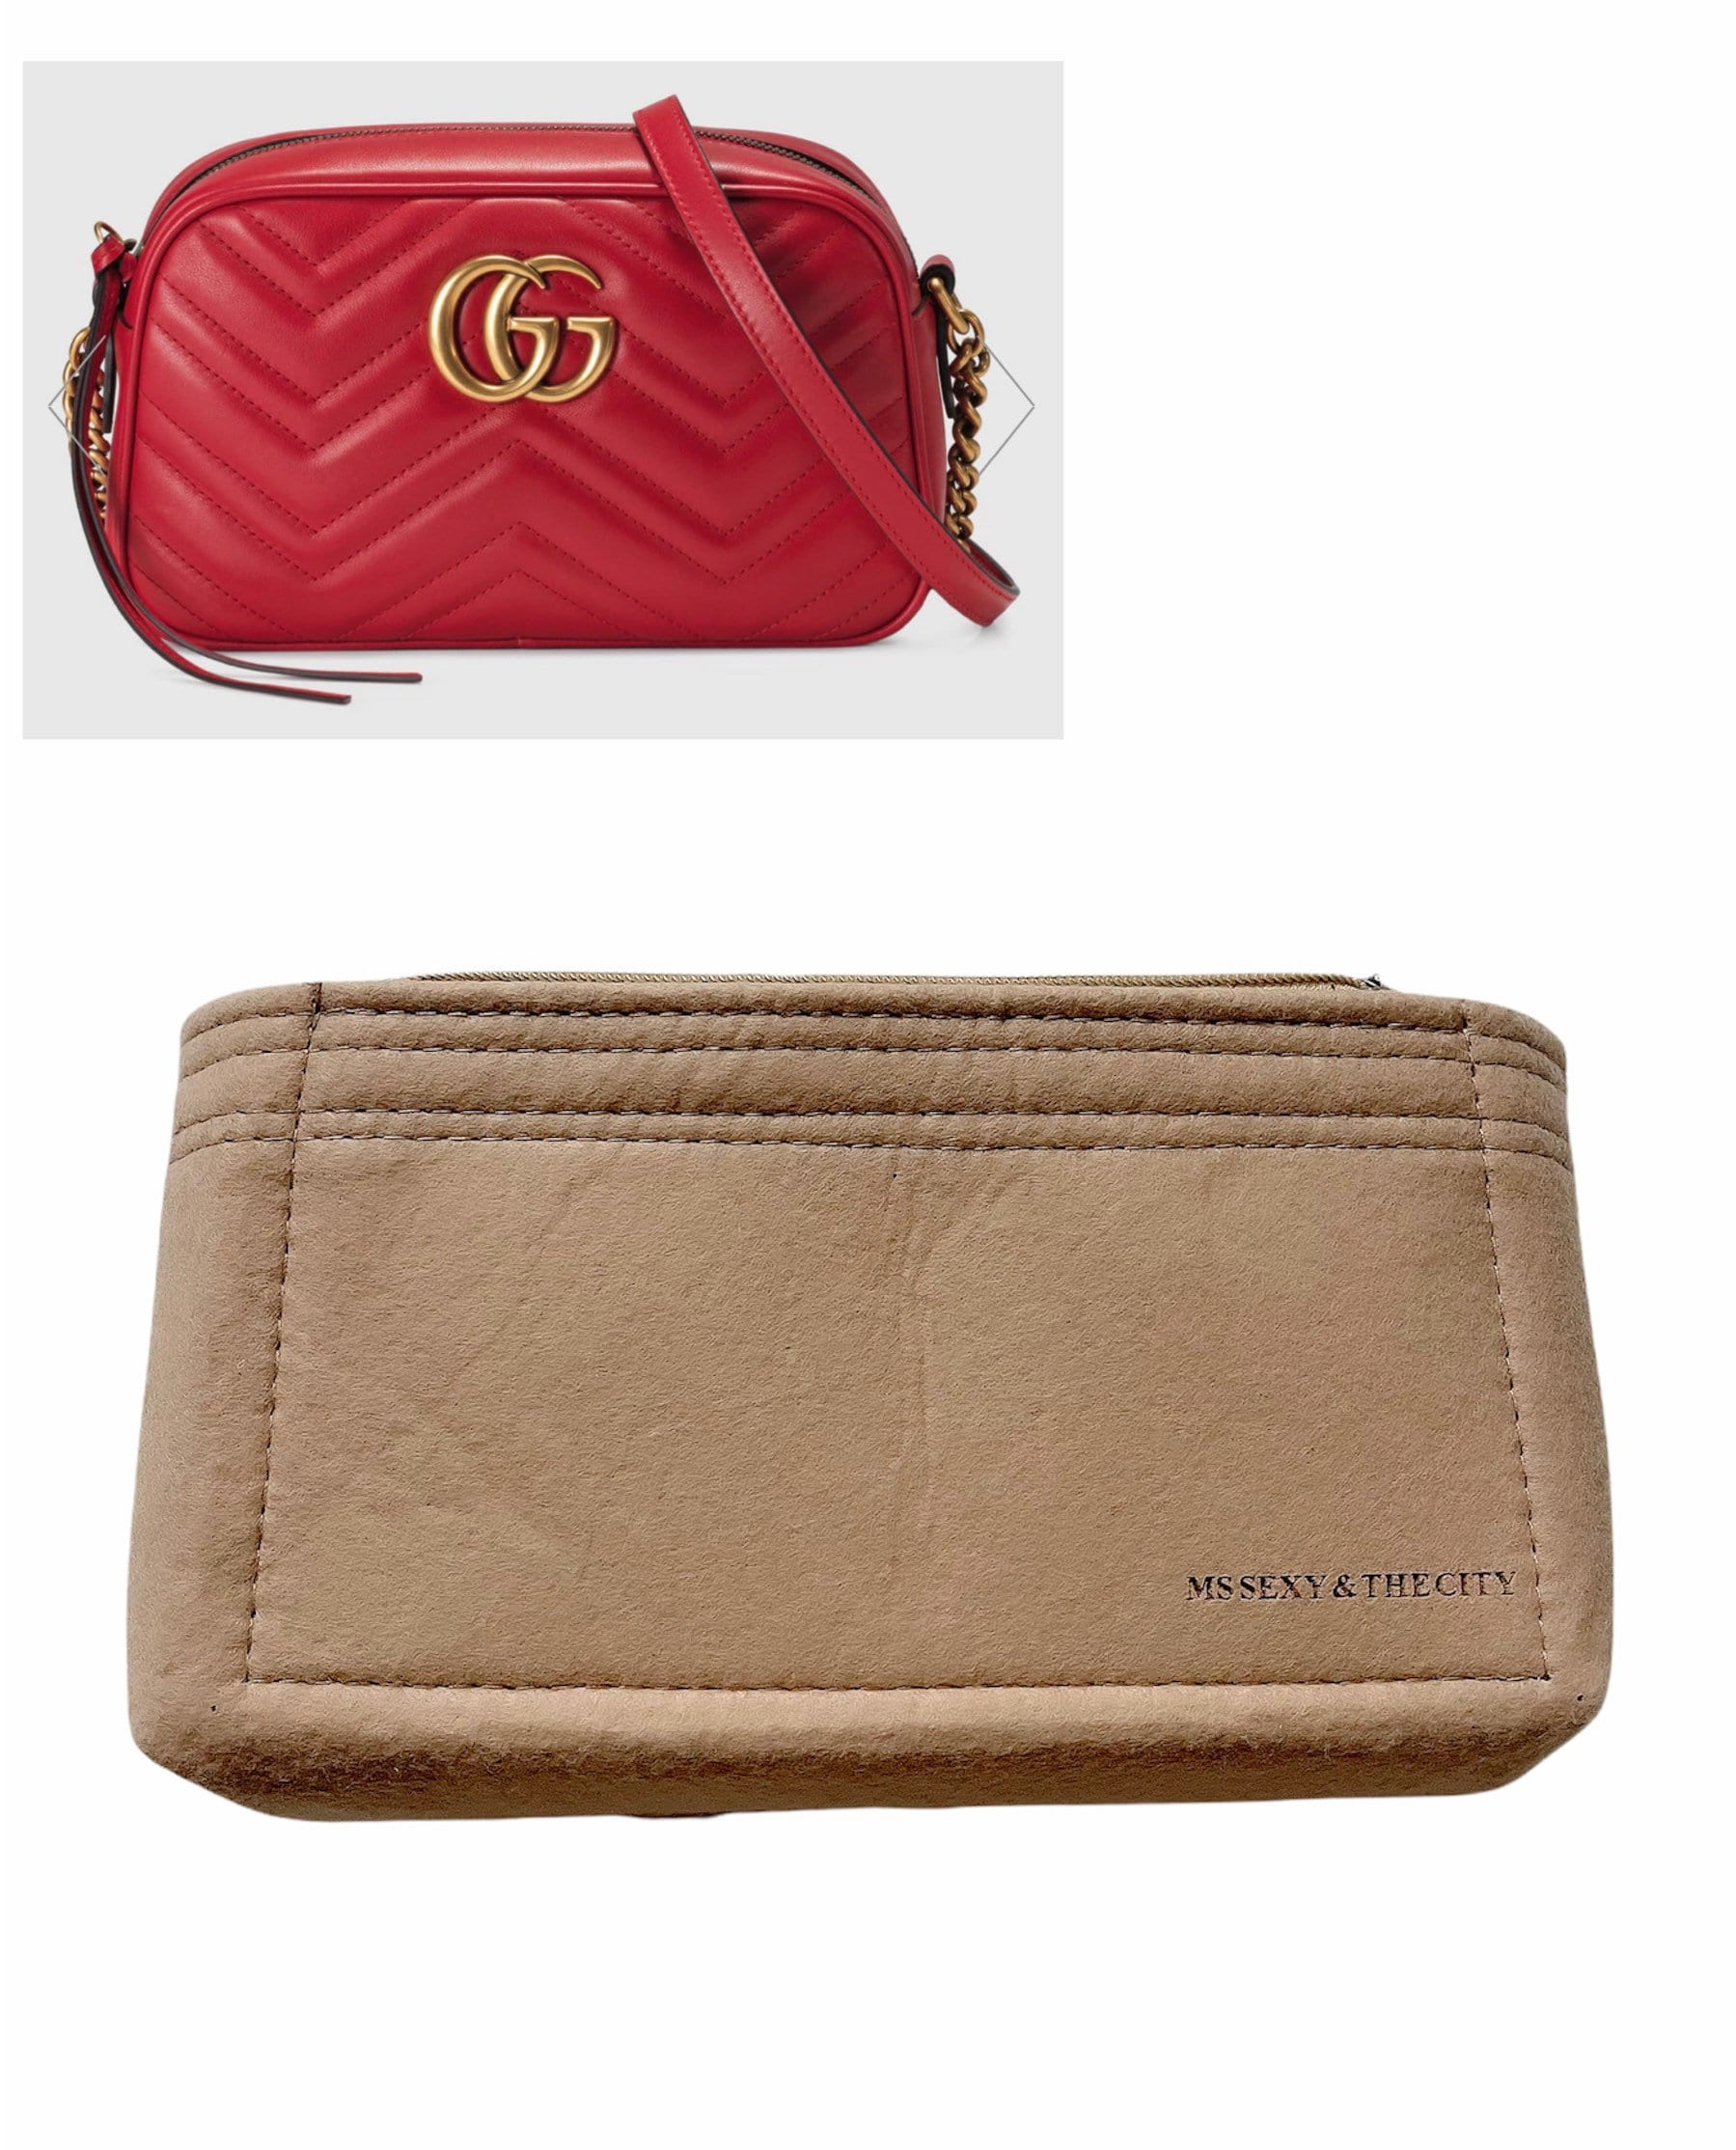 Small Handbag Shaper Insert for GG Marmont Matelasse Shoulder Bag(Pack of  2) Felt Insert Purse Organ…See more Small Handbag Shaper Insert for GG